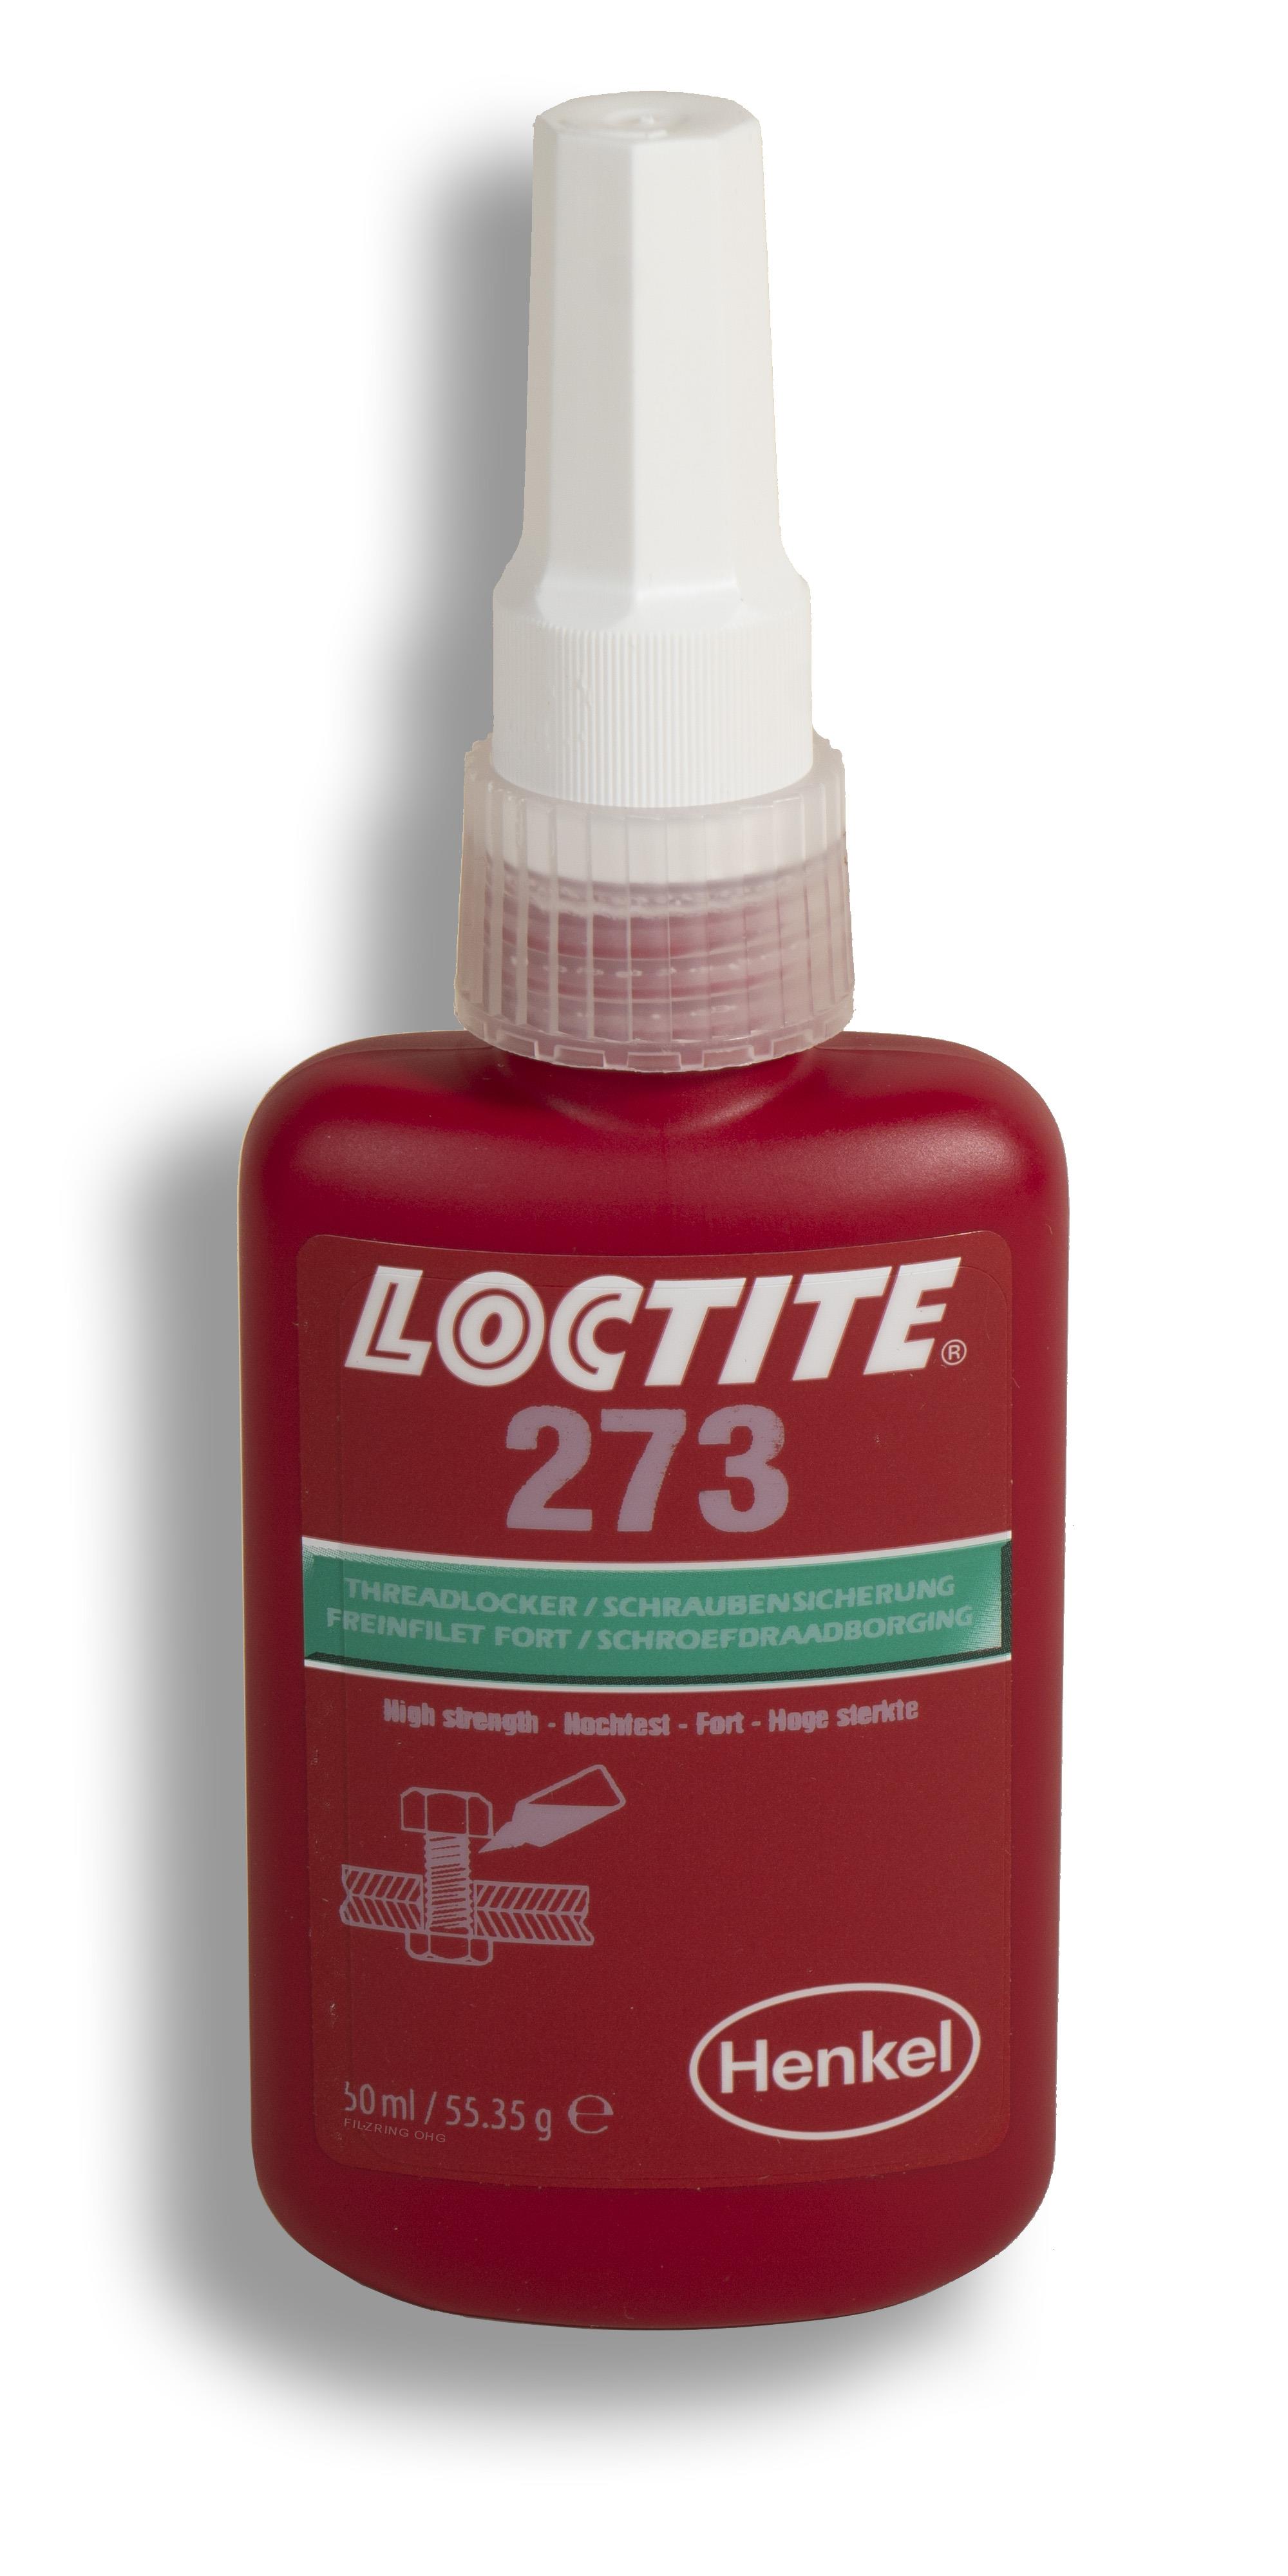 LOCTITE 273 Schraubensicherung, 50ML Flasche, Henkel, LOCTITE 273, LOCTITE, Henkel, Marken & Hersteller